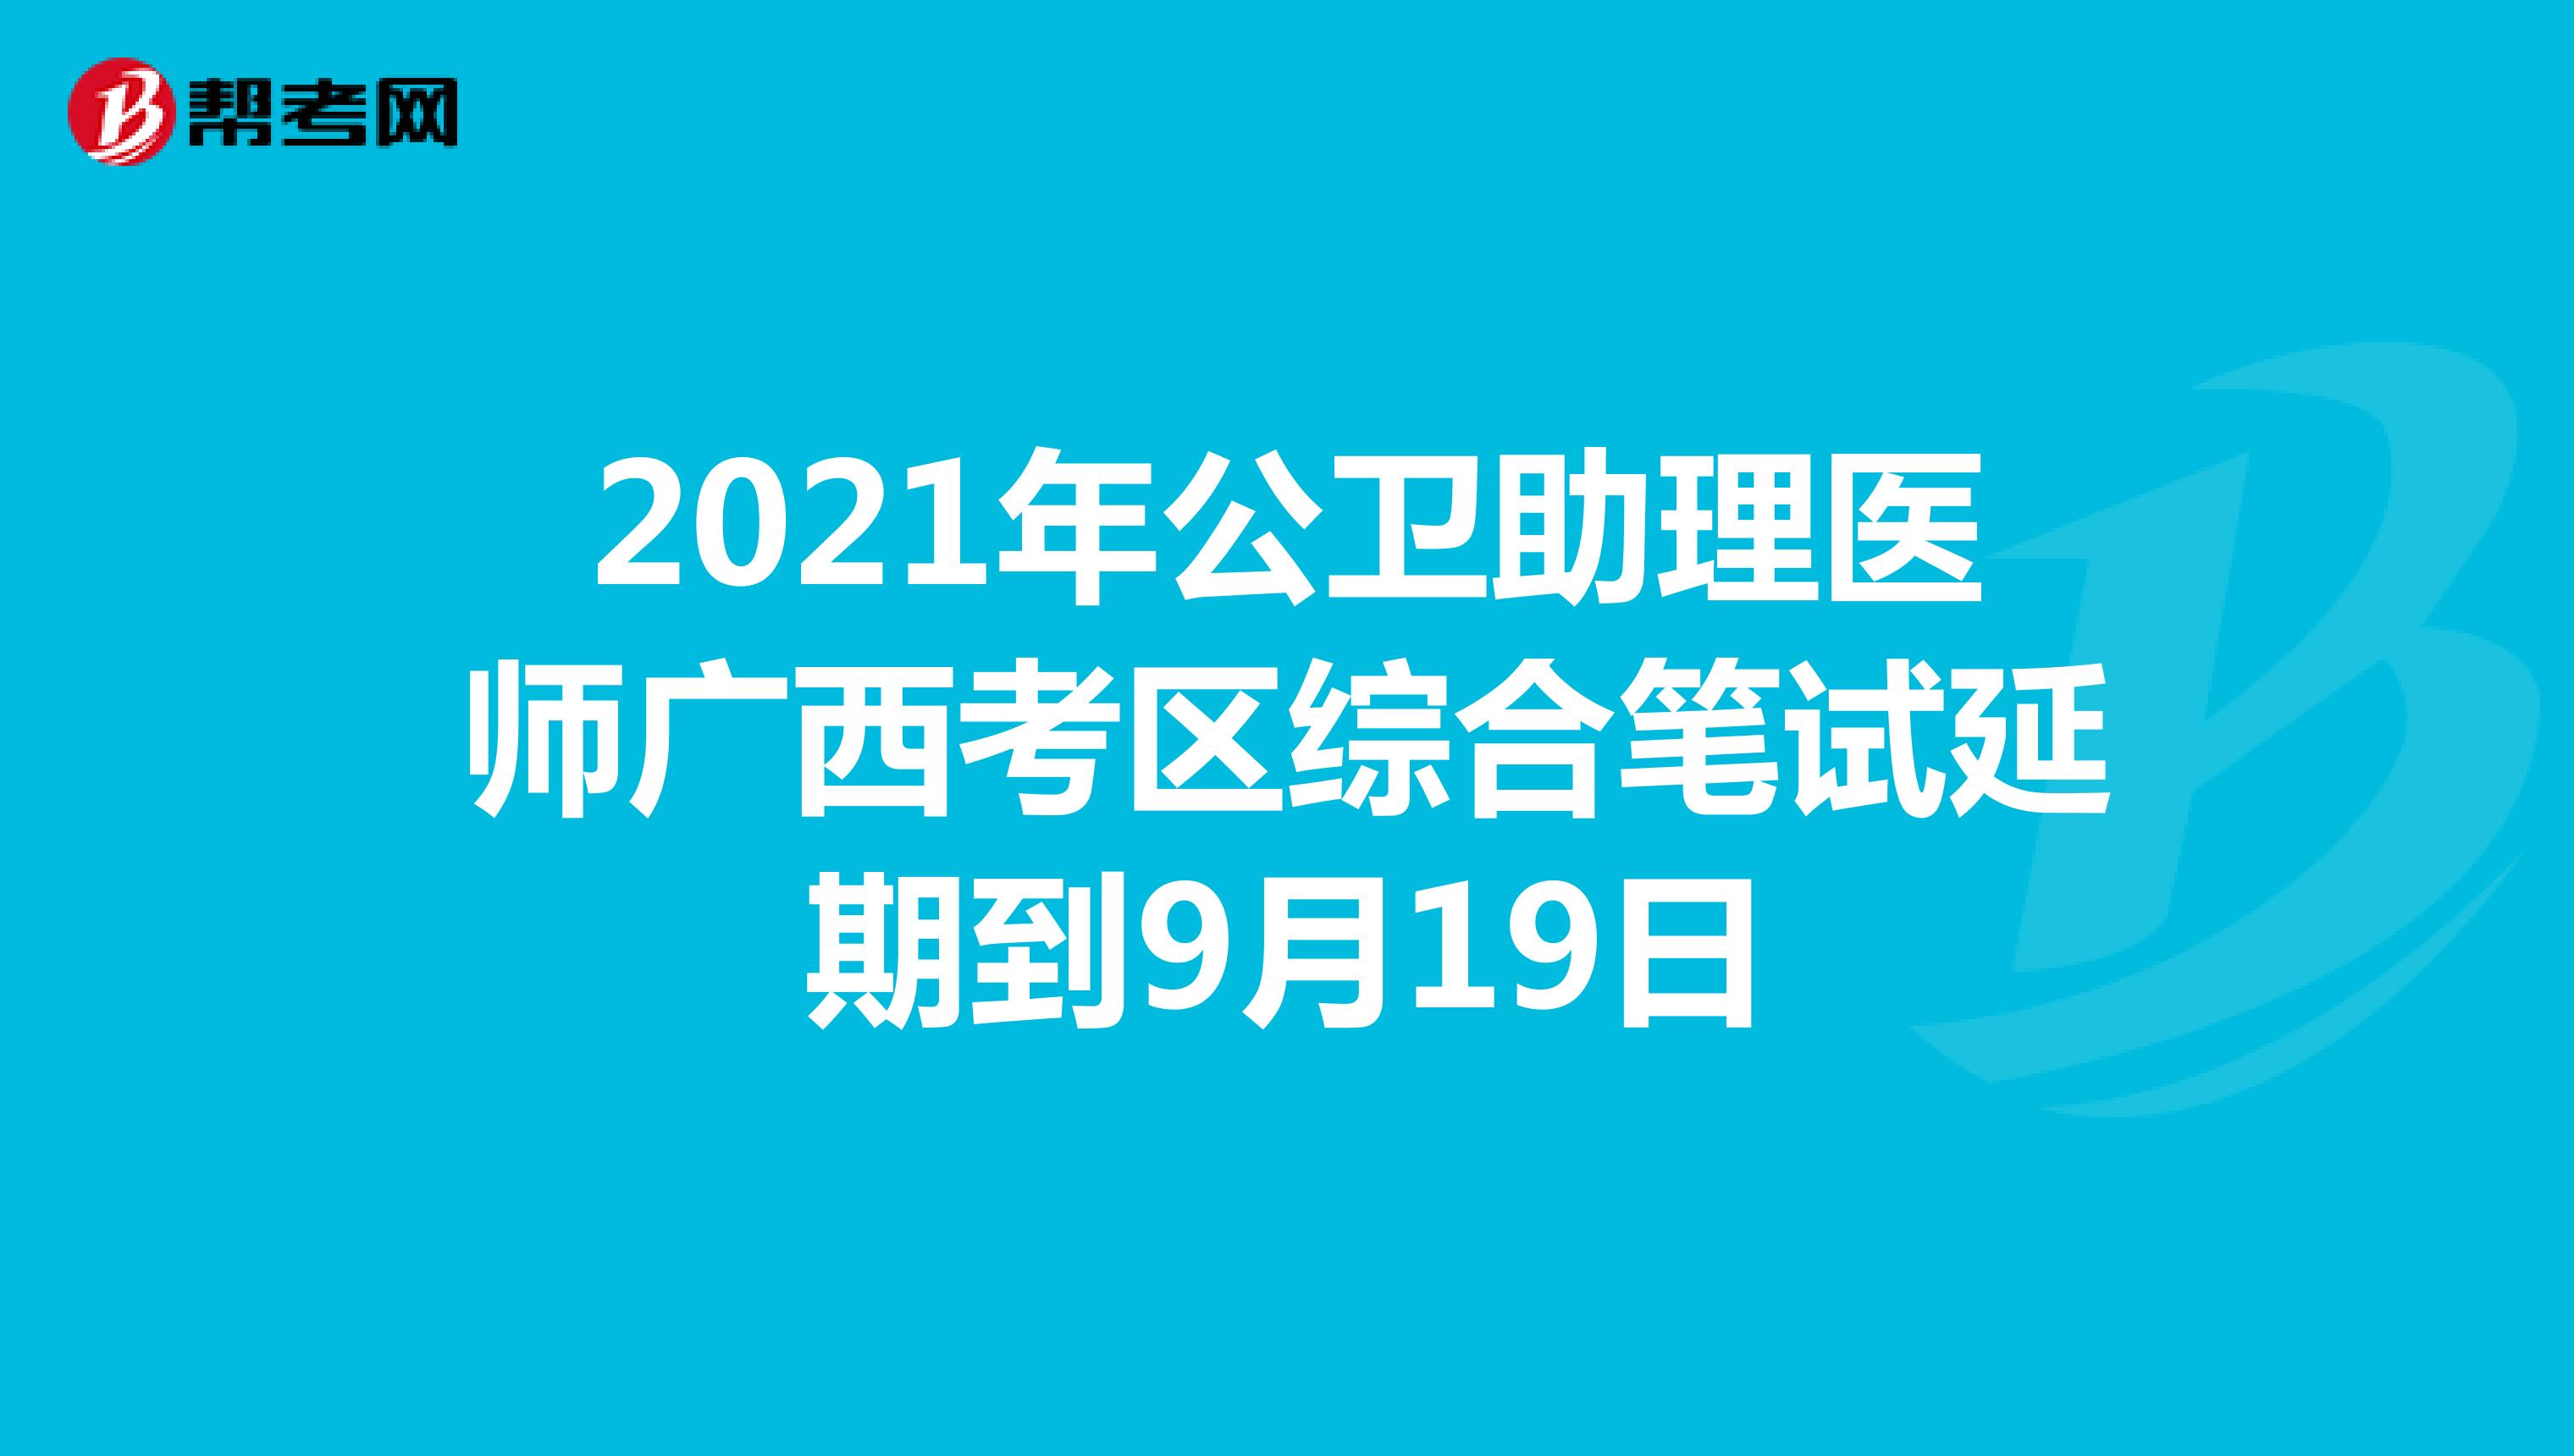 2021年公卫助理医师广西考区综合笔试延期到9月19日